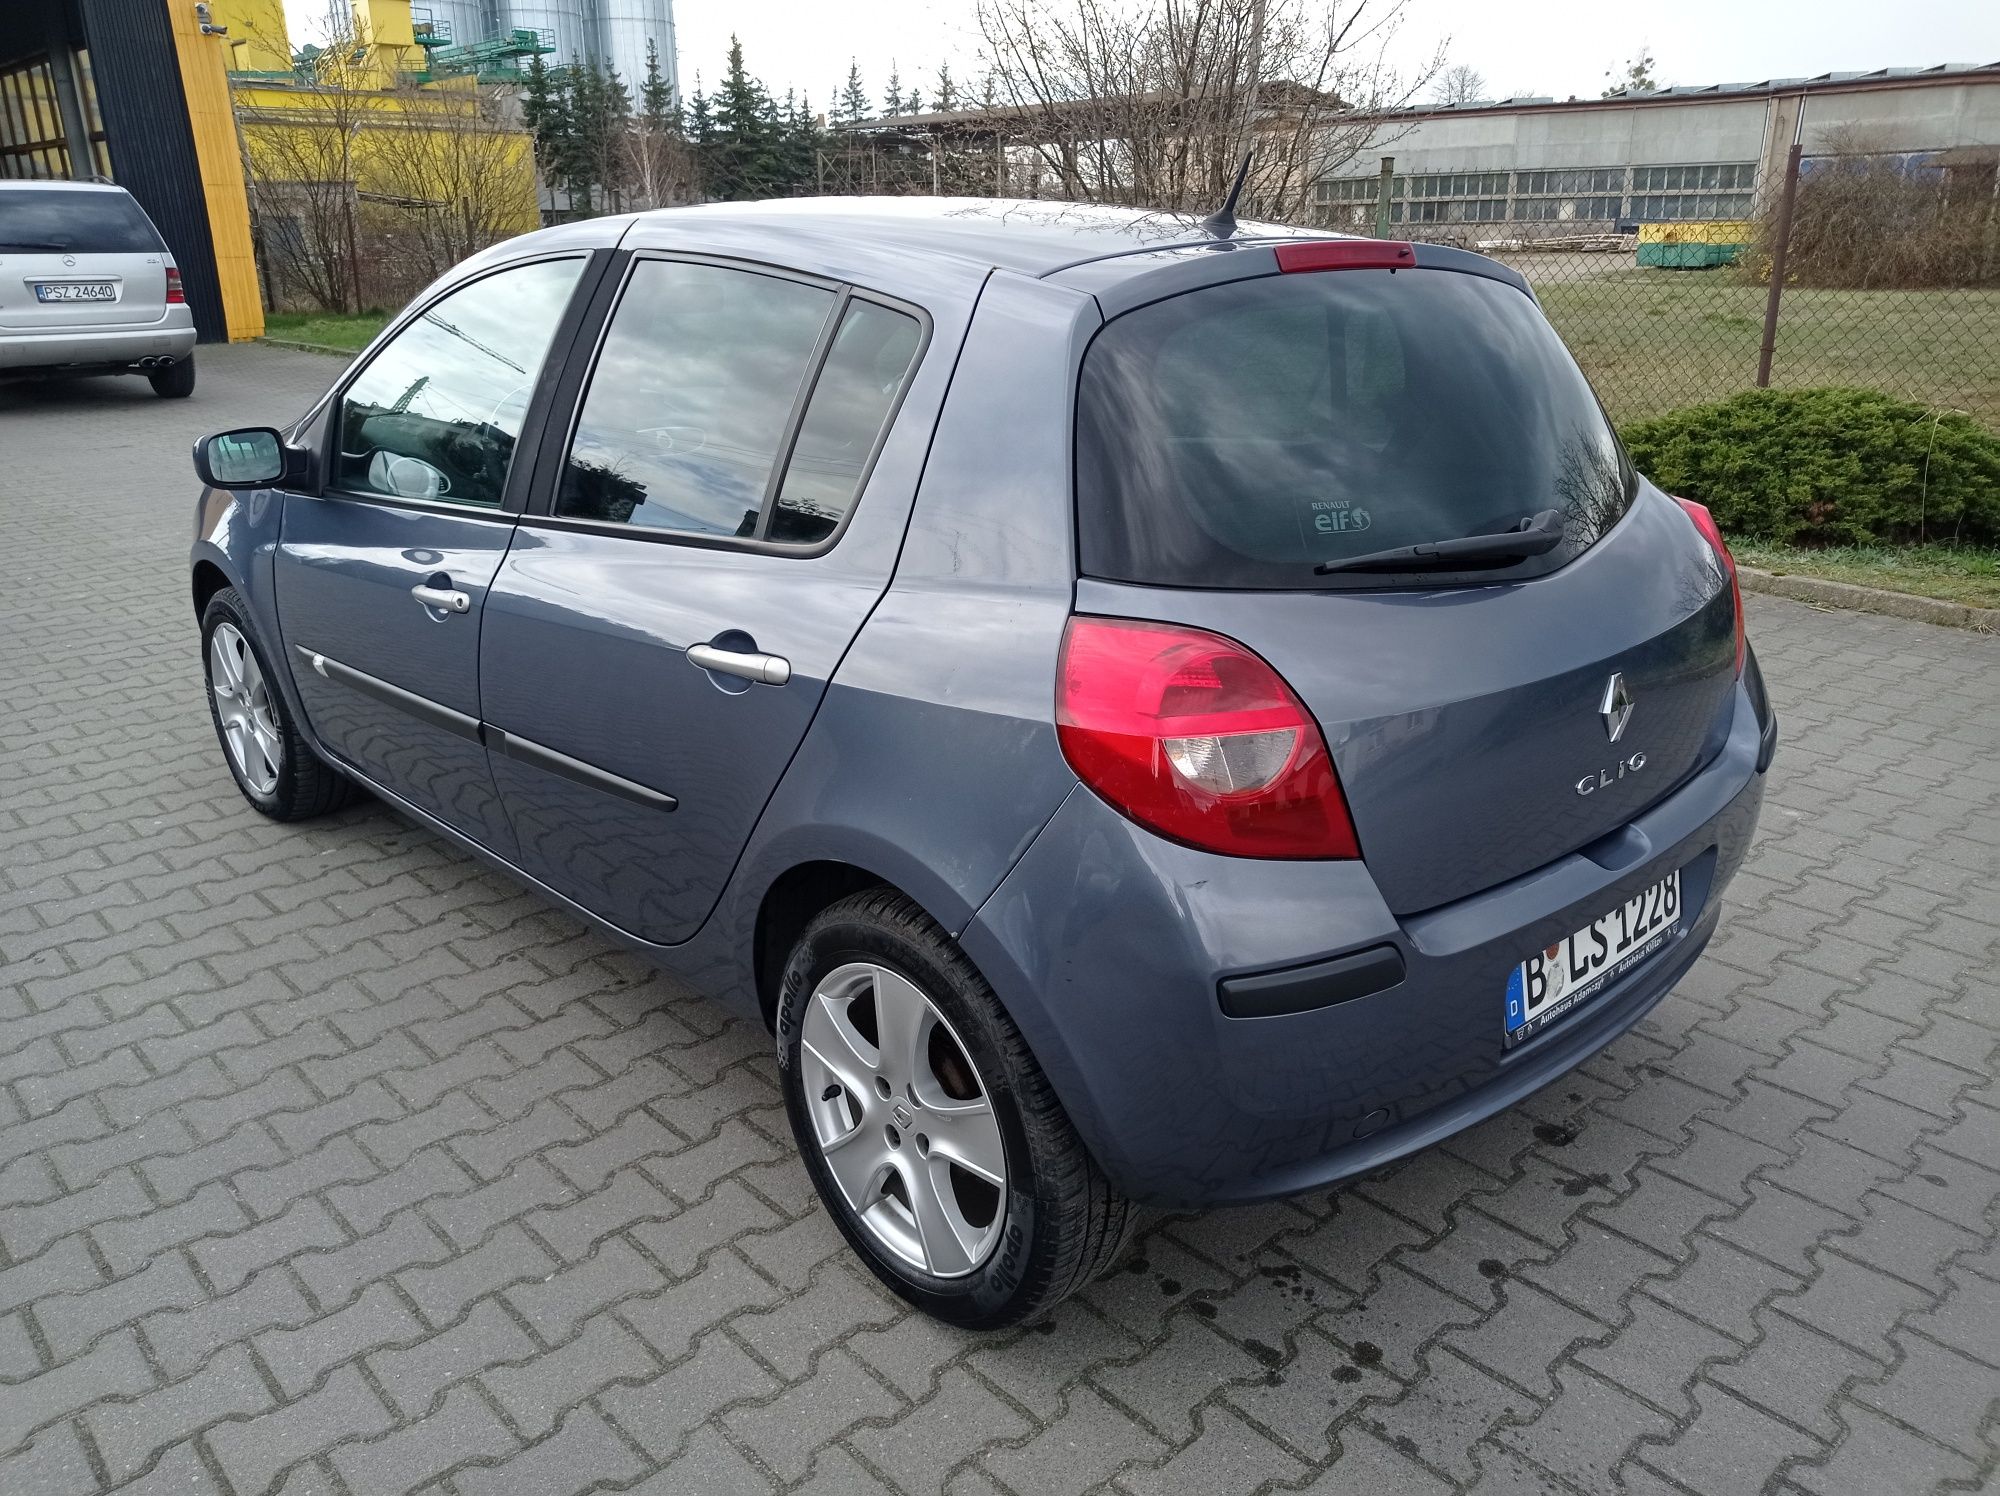 Renault Clio 1.2_Z Niemiec_5 drzwi_Bezwypadkowa_Serwisowana_